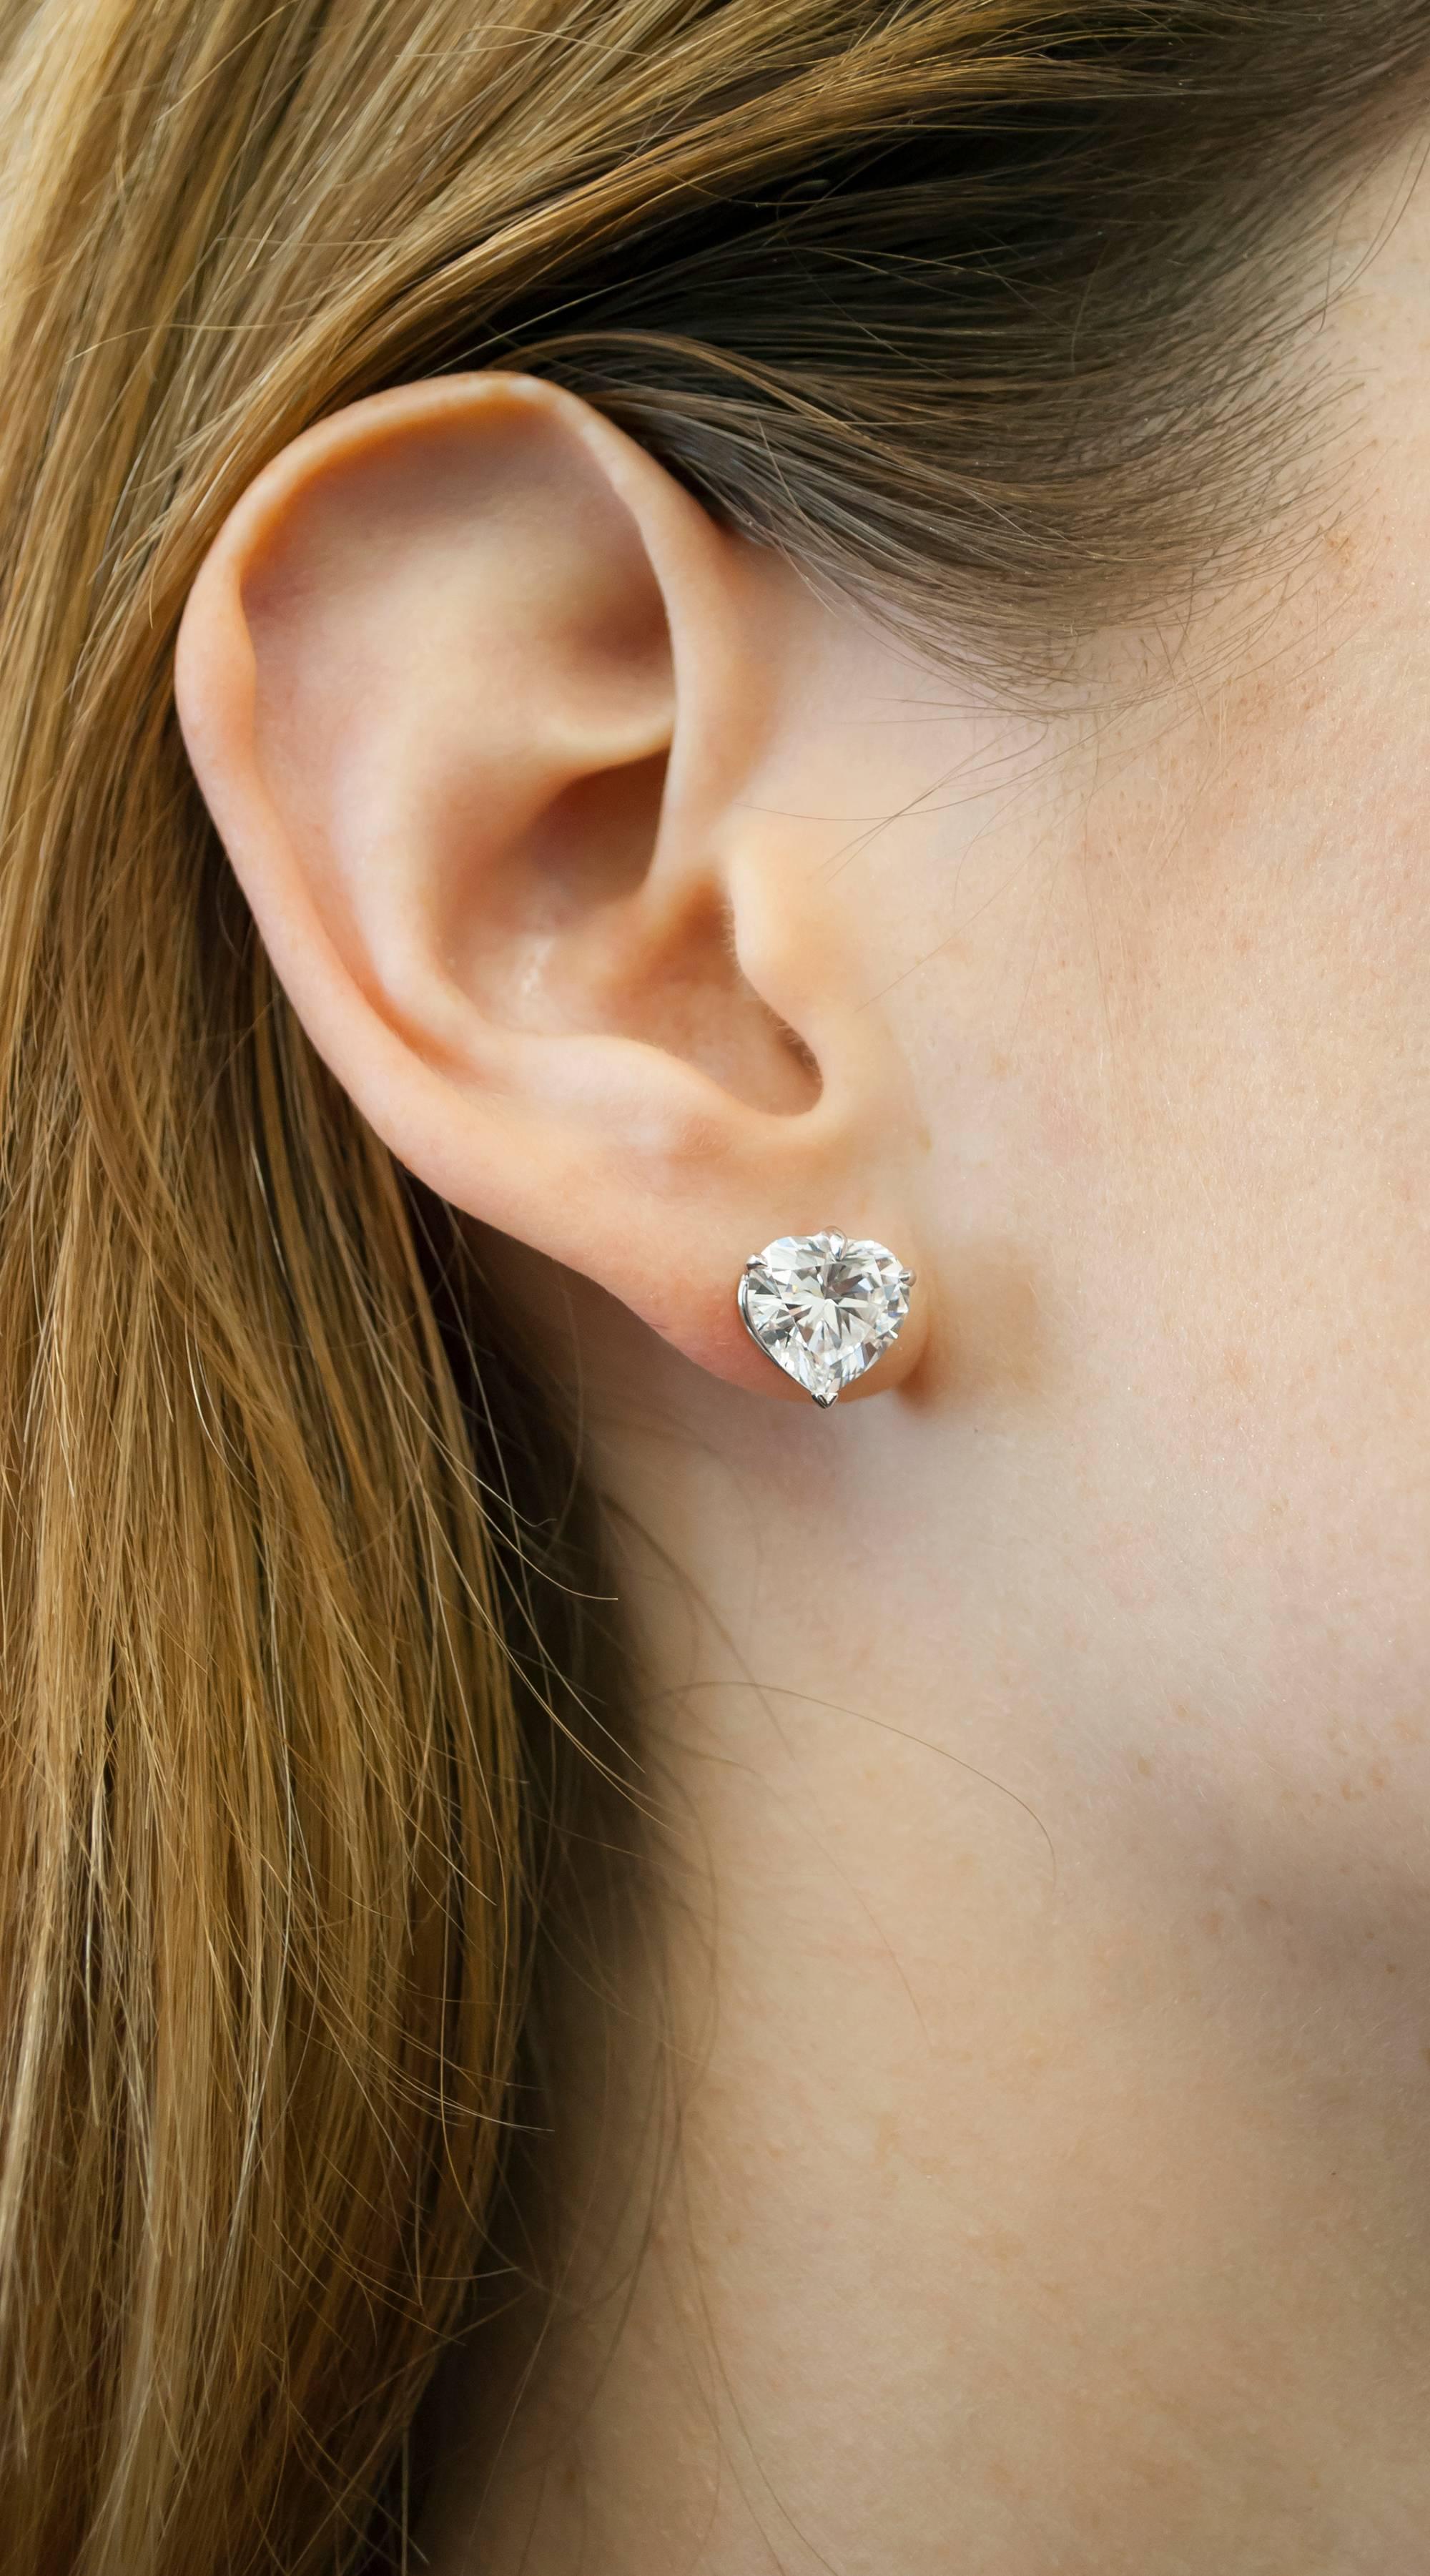 GIA-zertifizierte 2-Karat-Diamantohrstecker in Herzform 
VVS1 Klarheit
D/E Farbe

